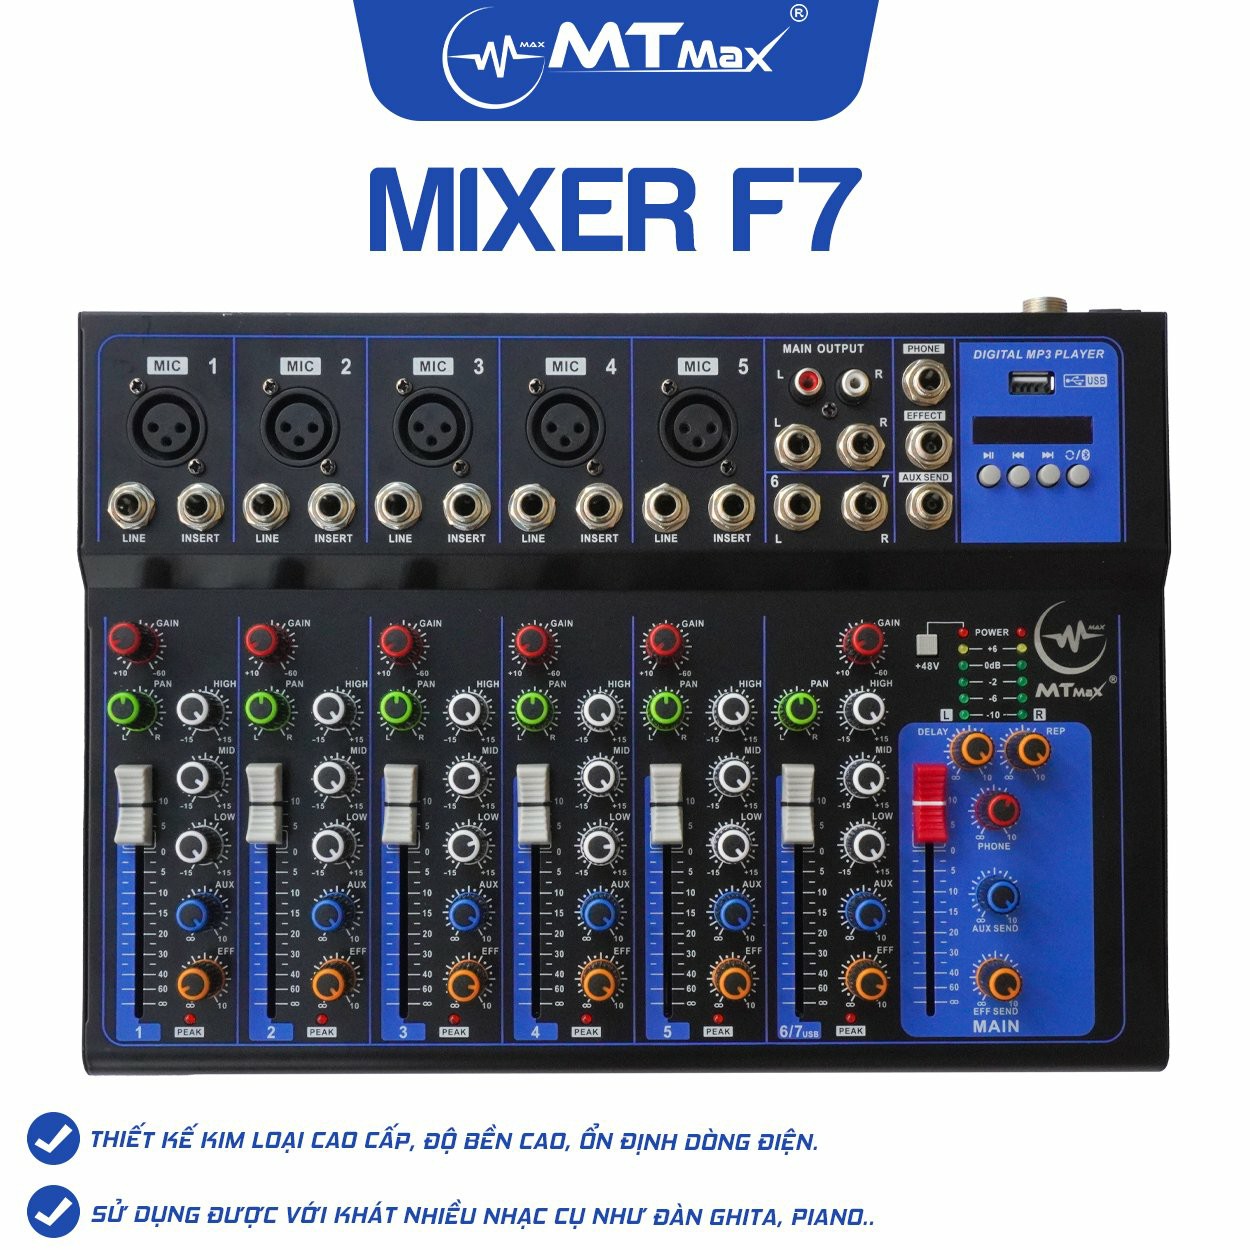 [Tặng dây kết nối] Bàn trộn Mixer MTMax F7 BT - 7 kênh cao cấp - Có bluetooth, chống hú tốt - Màn hình led hiển thị thông số - Hỗ trợ thu âm, livestream, karaoke online - Kết hợp được với loa kéo, amply, dàn karaoke